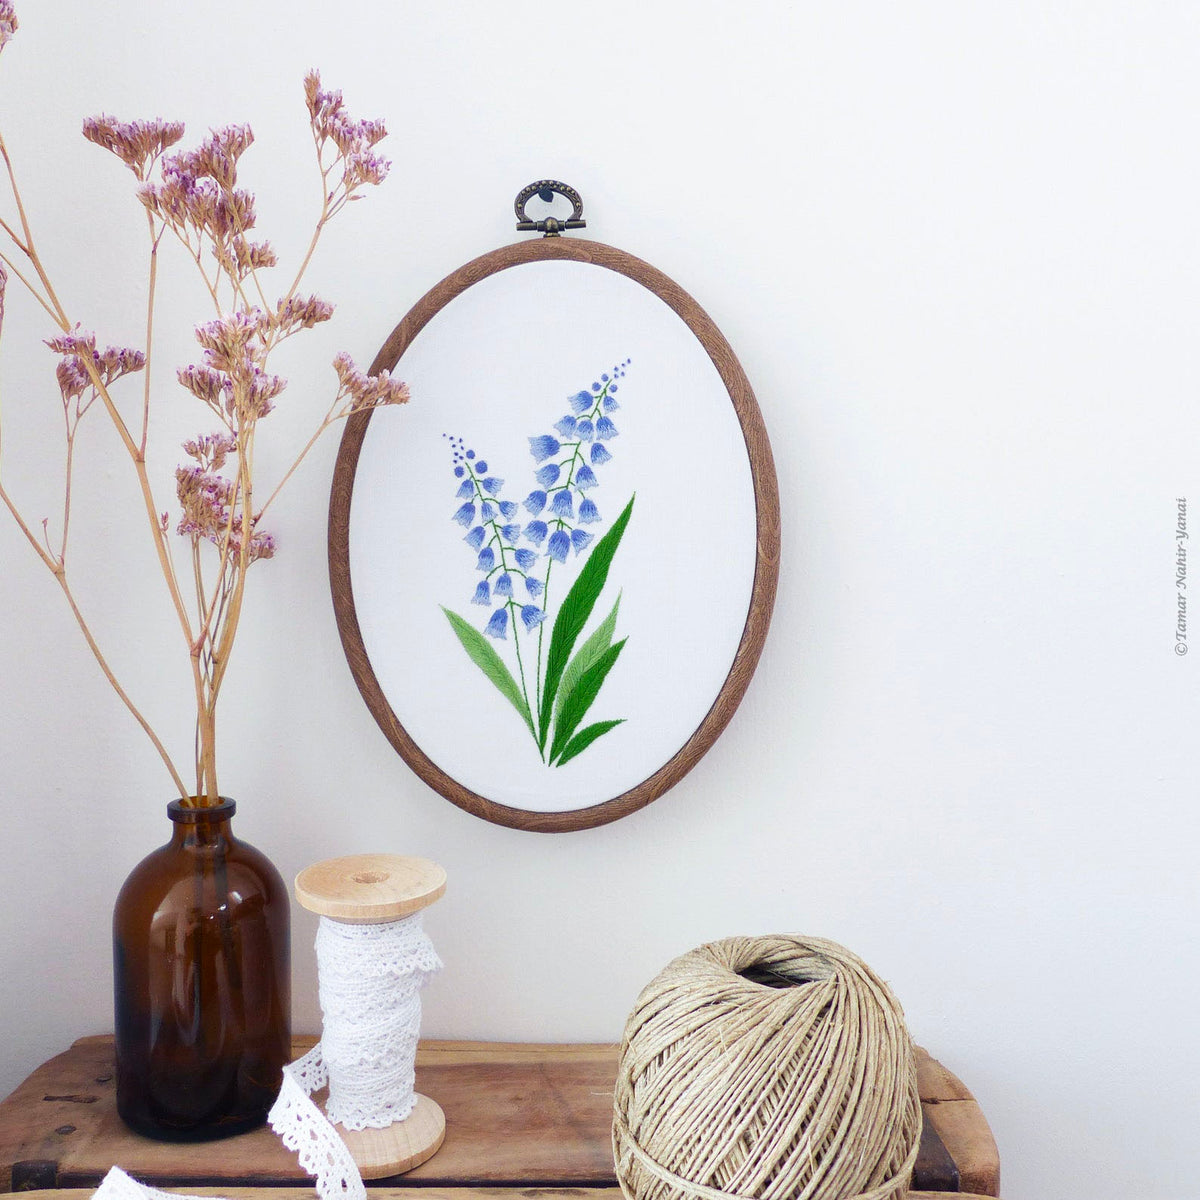 Bellevalia Hand Embroidery Kit